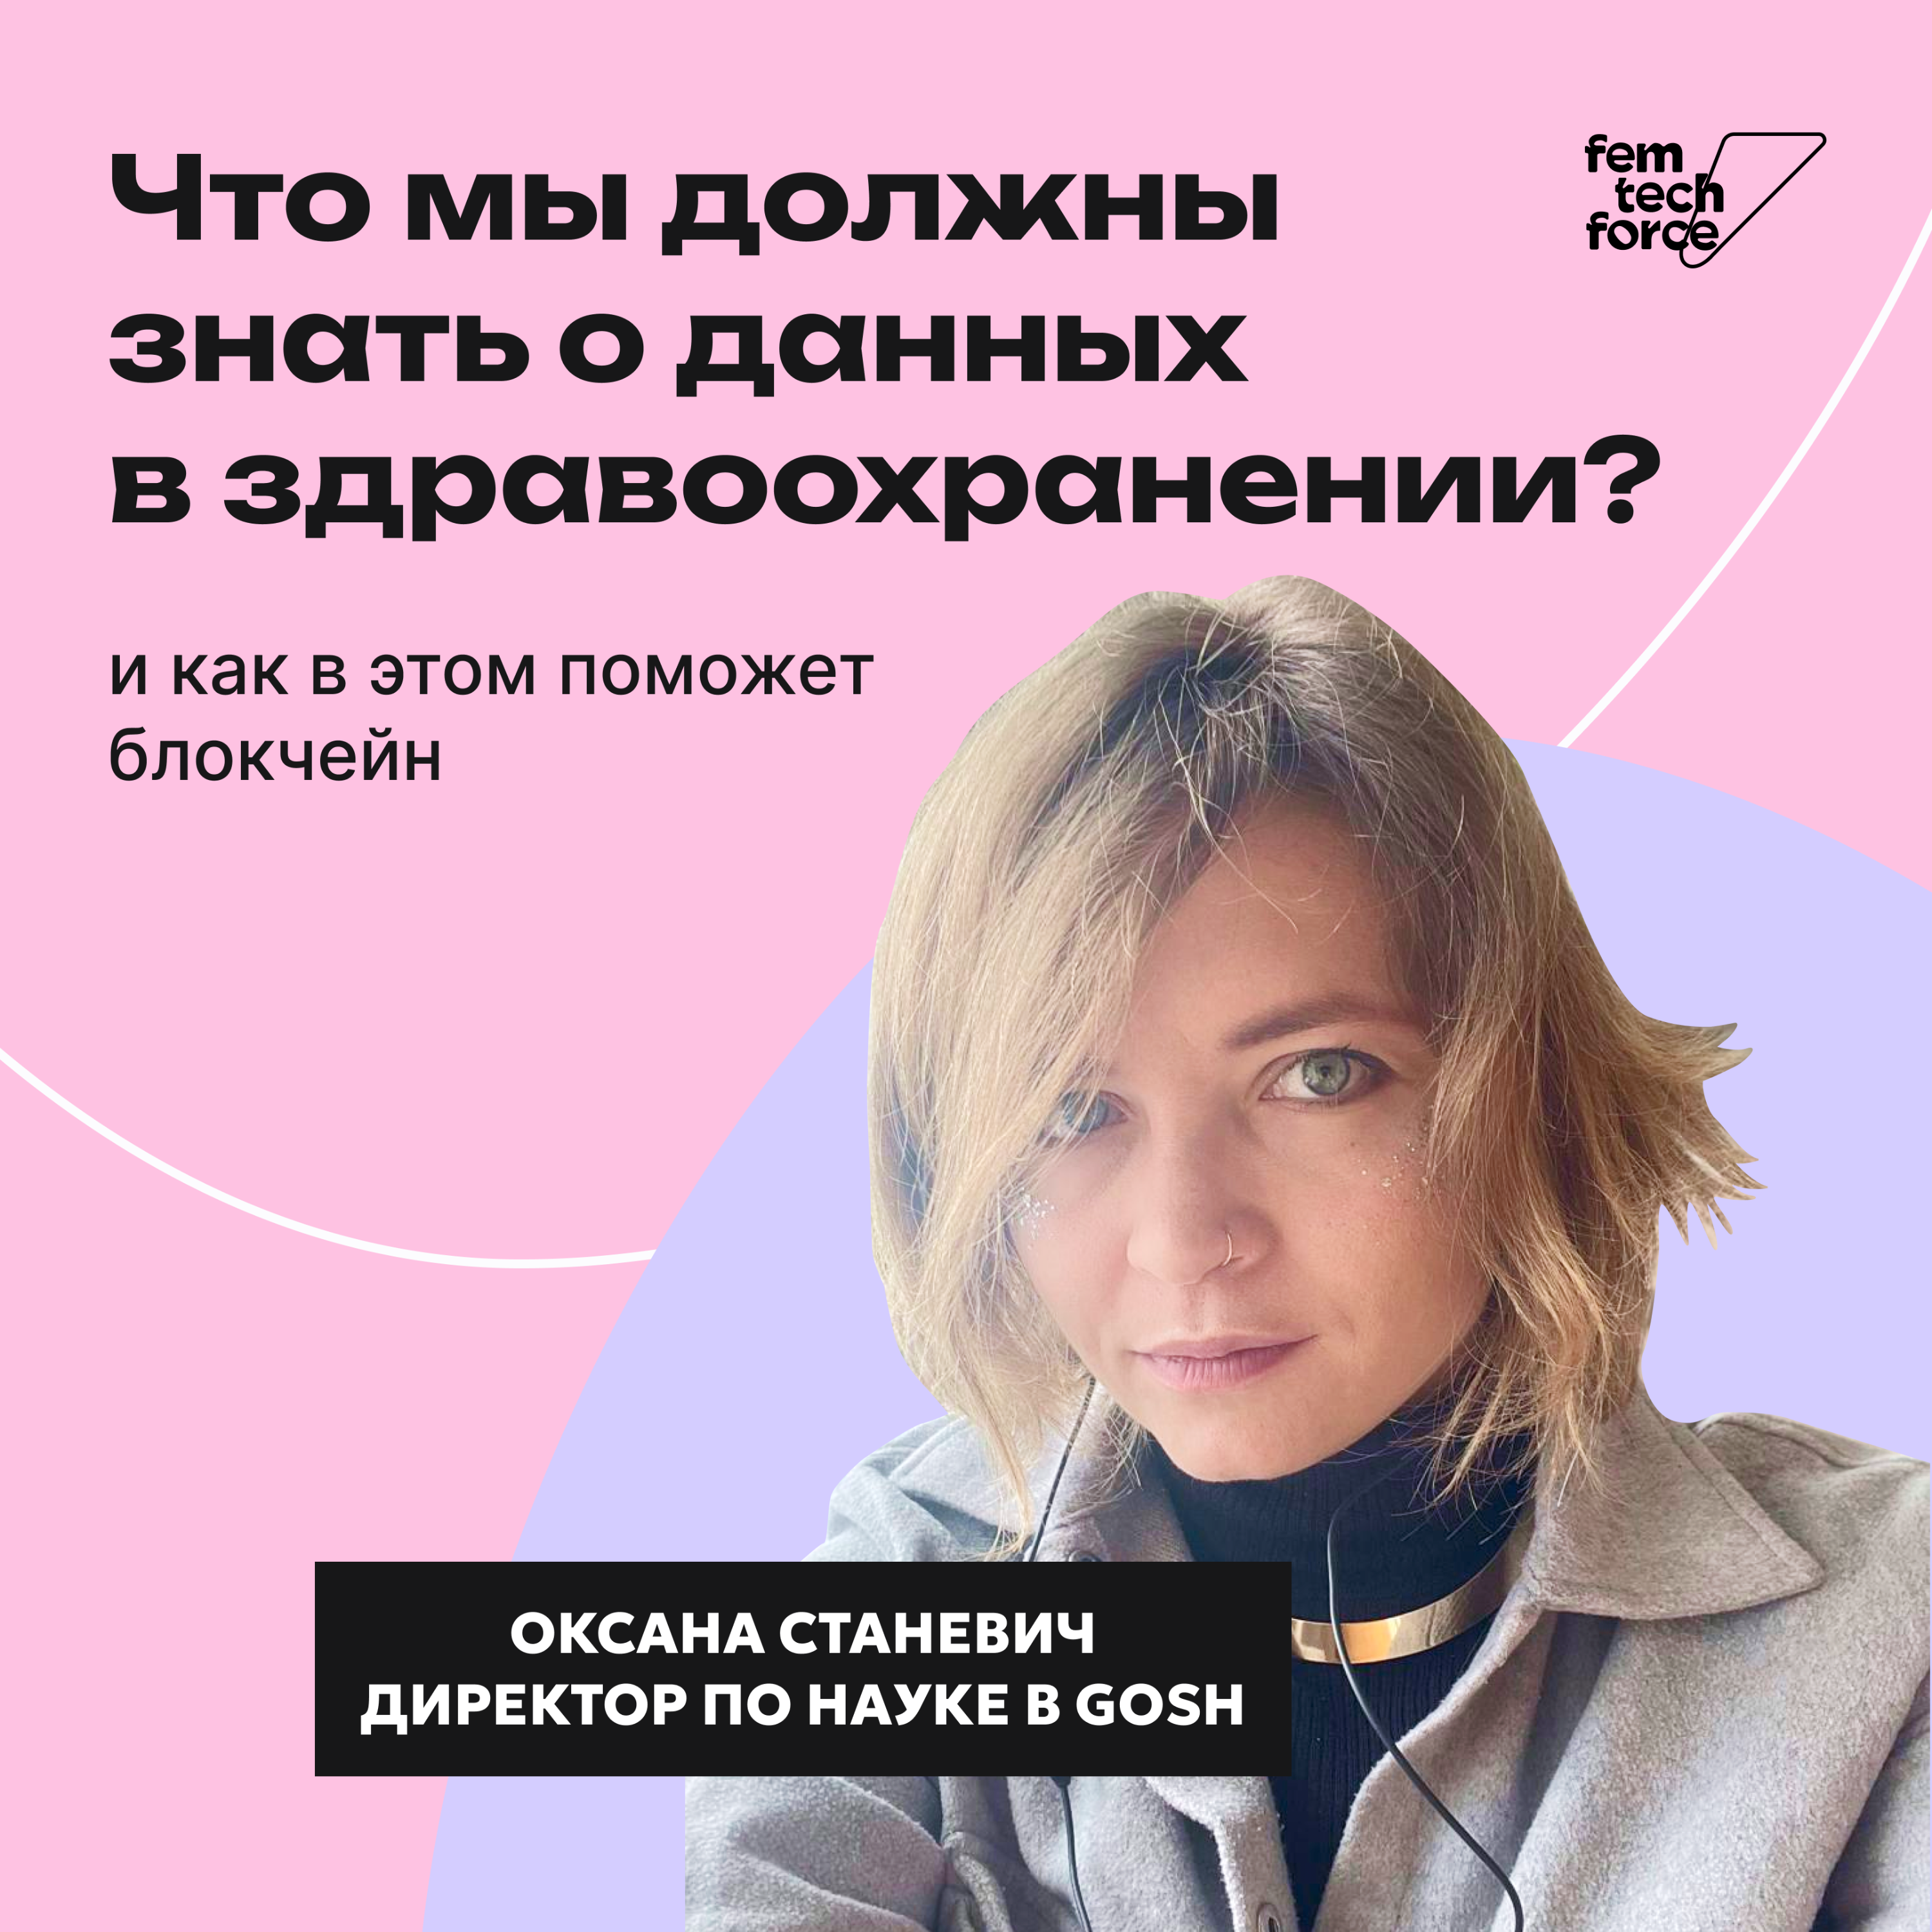 Оксана Станевич: Данные в здравоохранении, блокчейн и женское здоровье